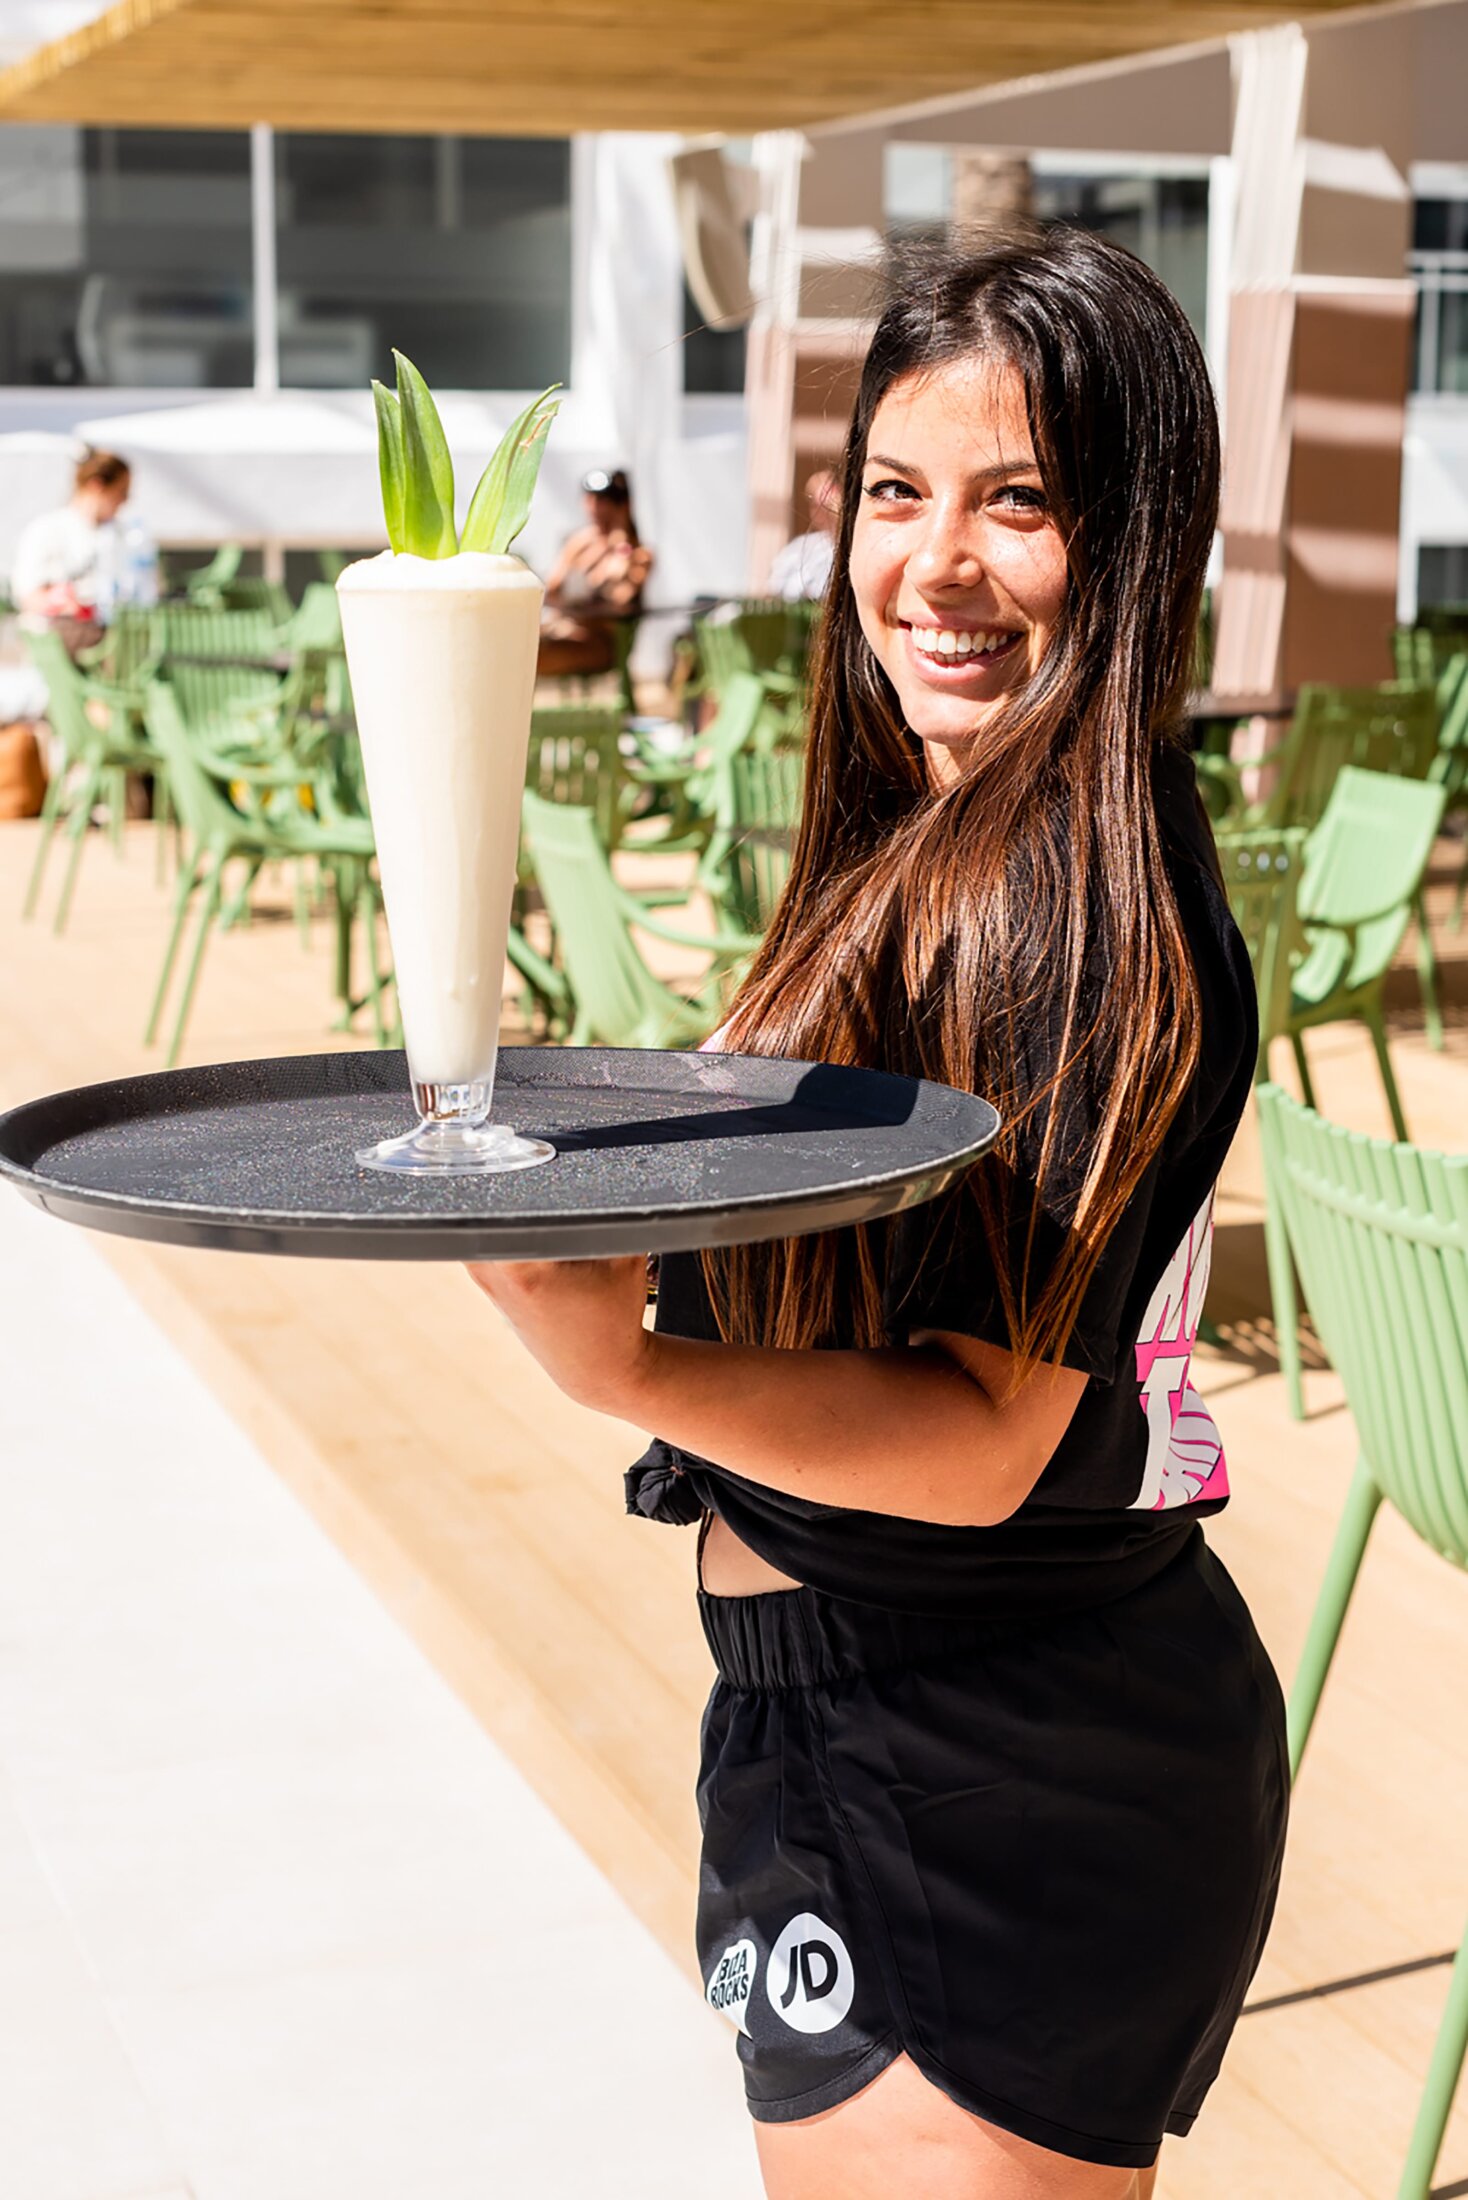 Ibiza rocks El personal del hotel sonríe llevando un cóctel helado de piña colada en la piscina chill out